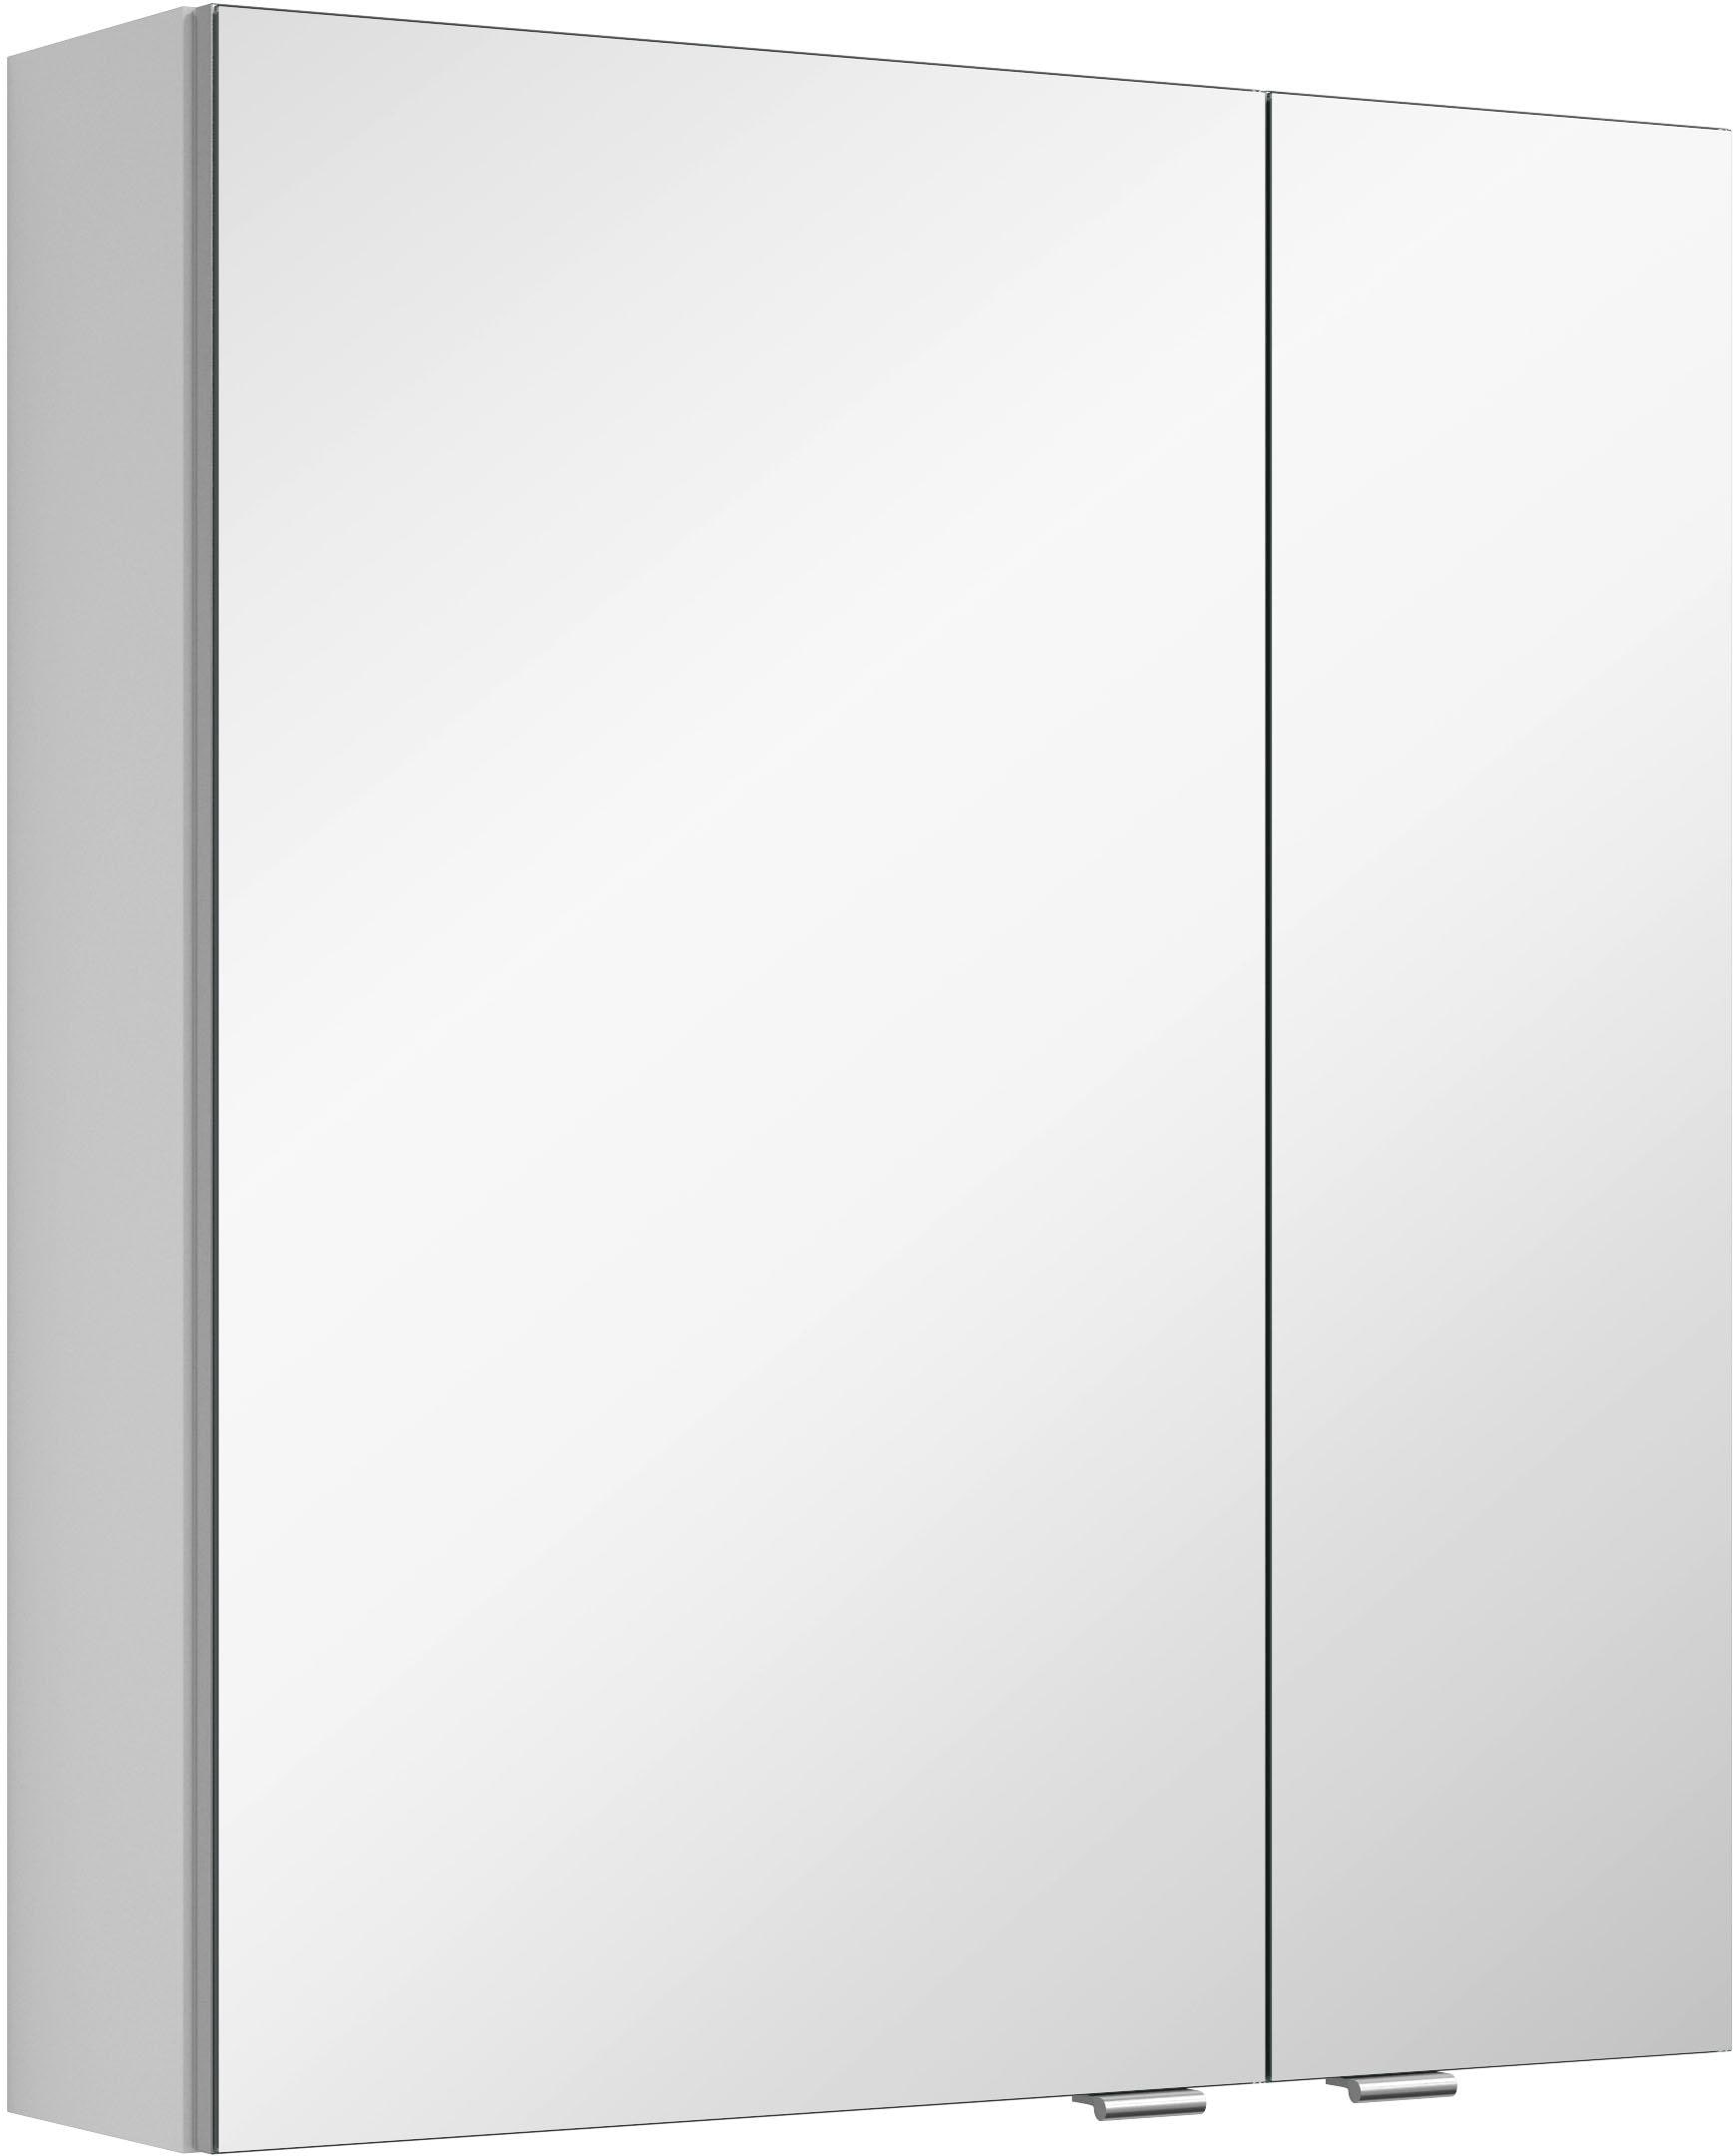 MARLIN Spiegelschrank "3980", mit doppelseitig verspiegelten Türen, vormontiert